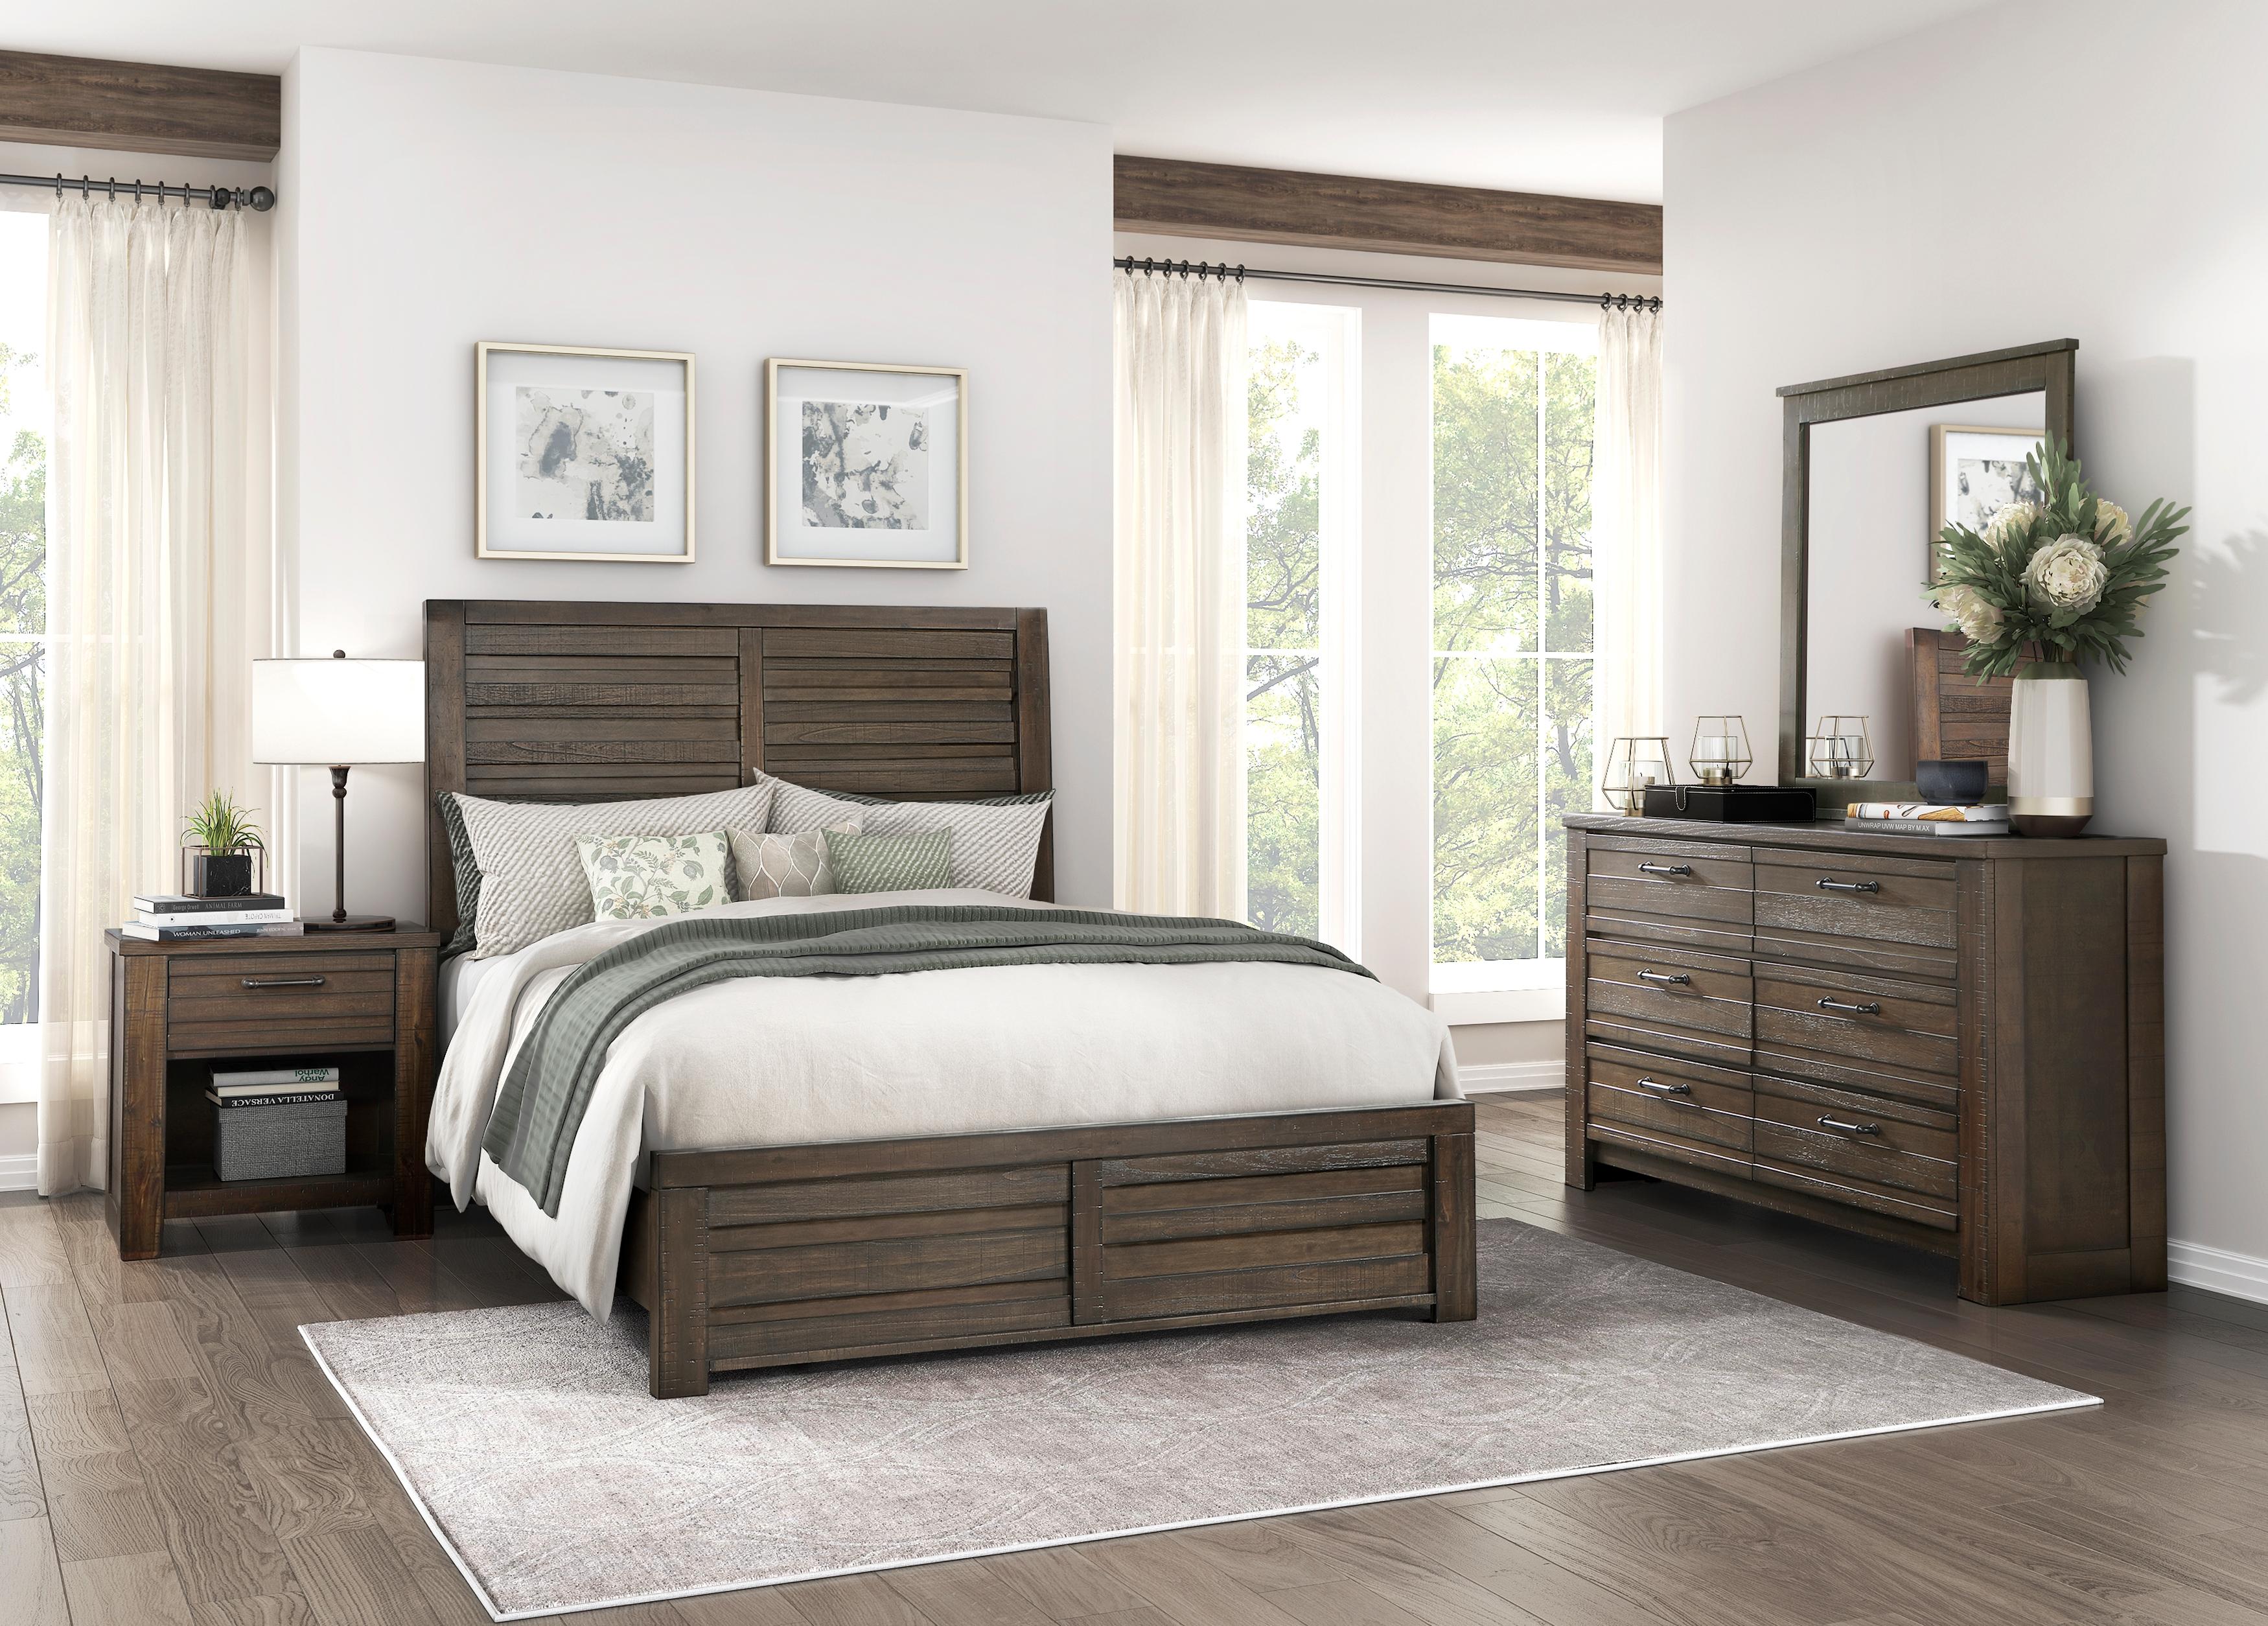 

    
Rustic Dark Brown Wood California King Panel Bedroom Set 5PCS Homelegance Longview 1498DBK-1CK-5PCS
